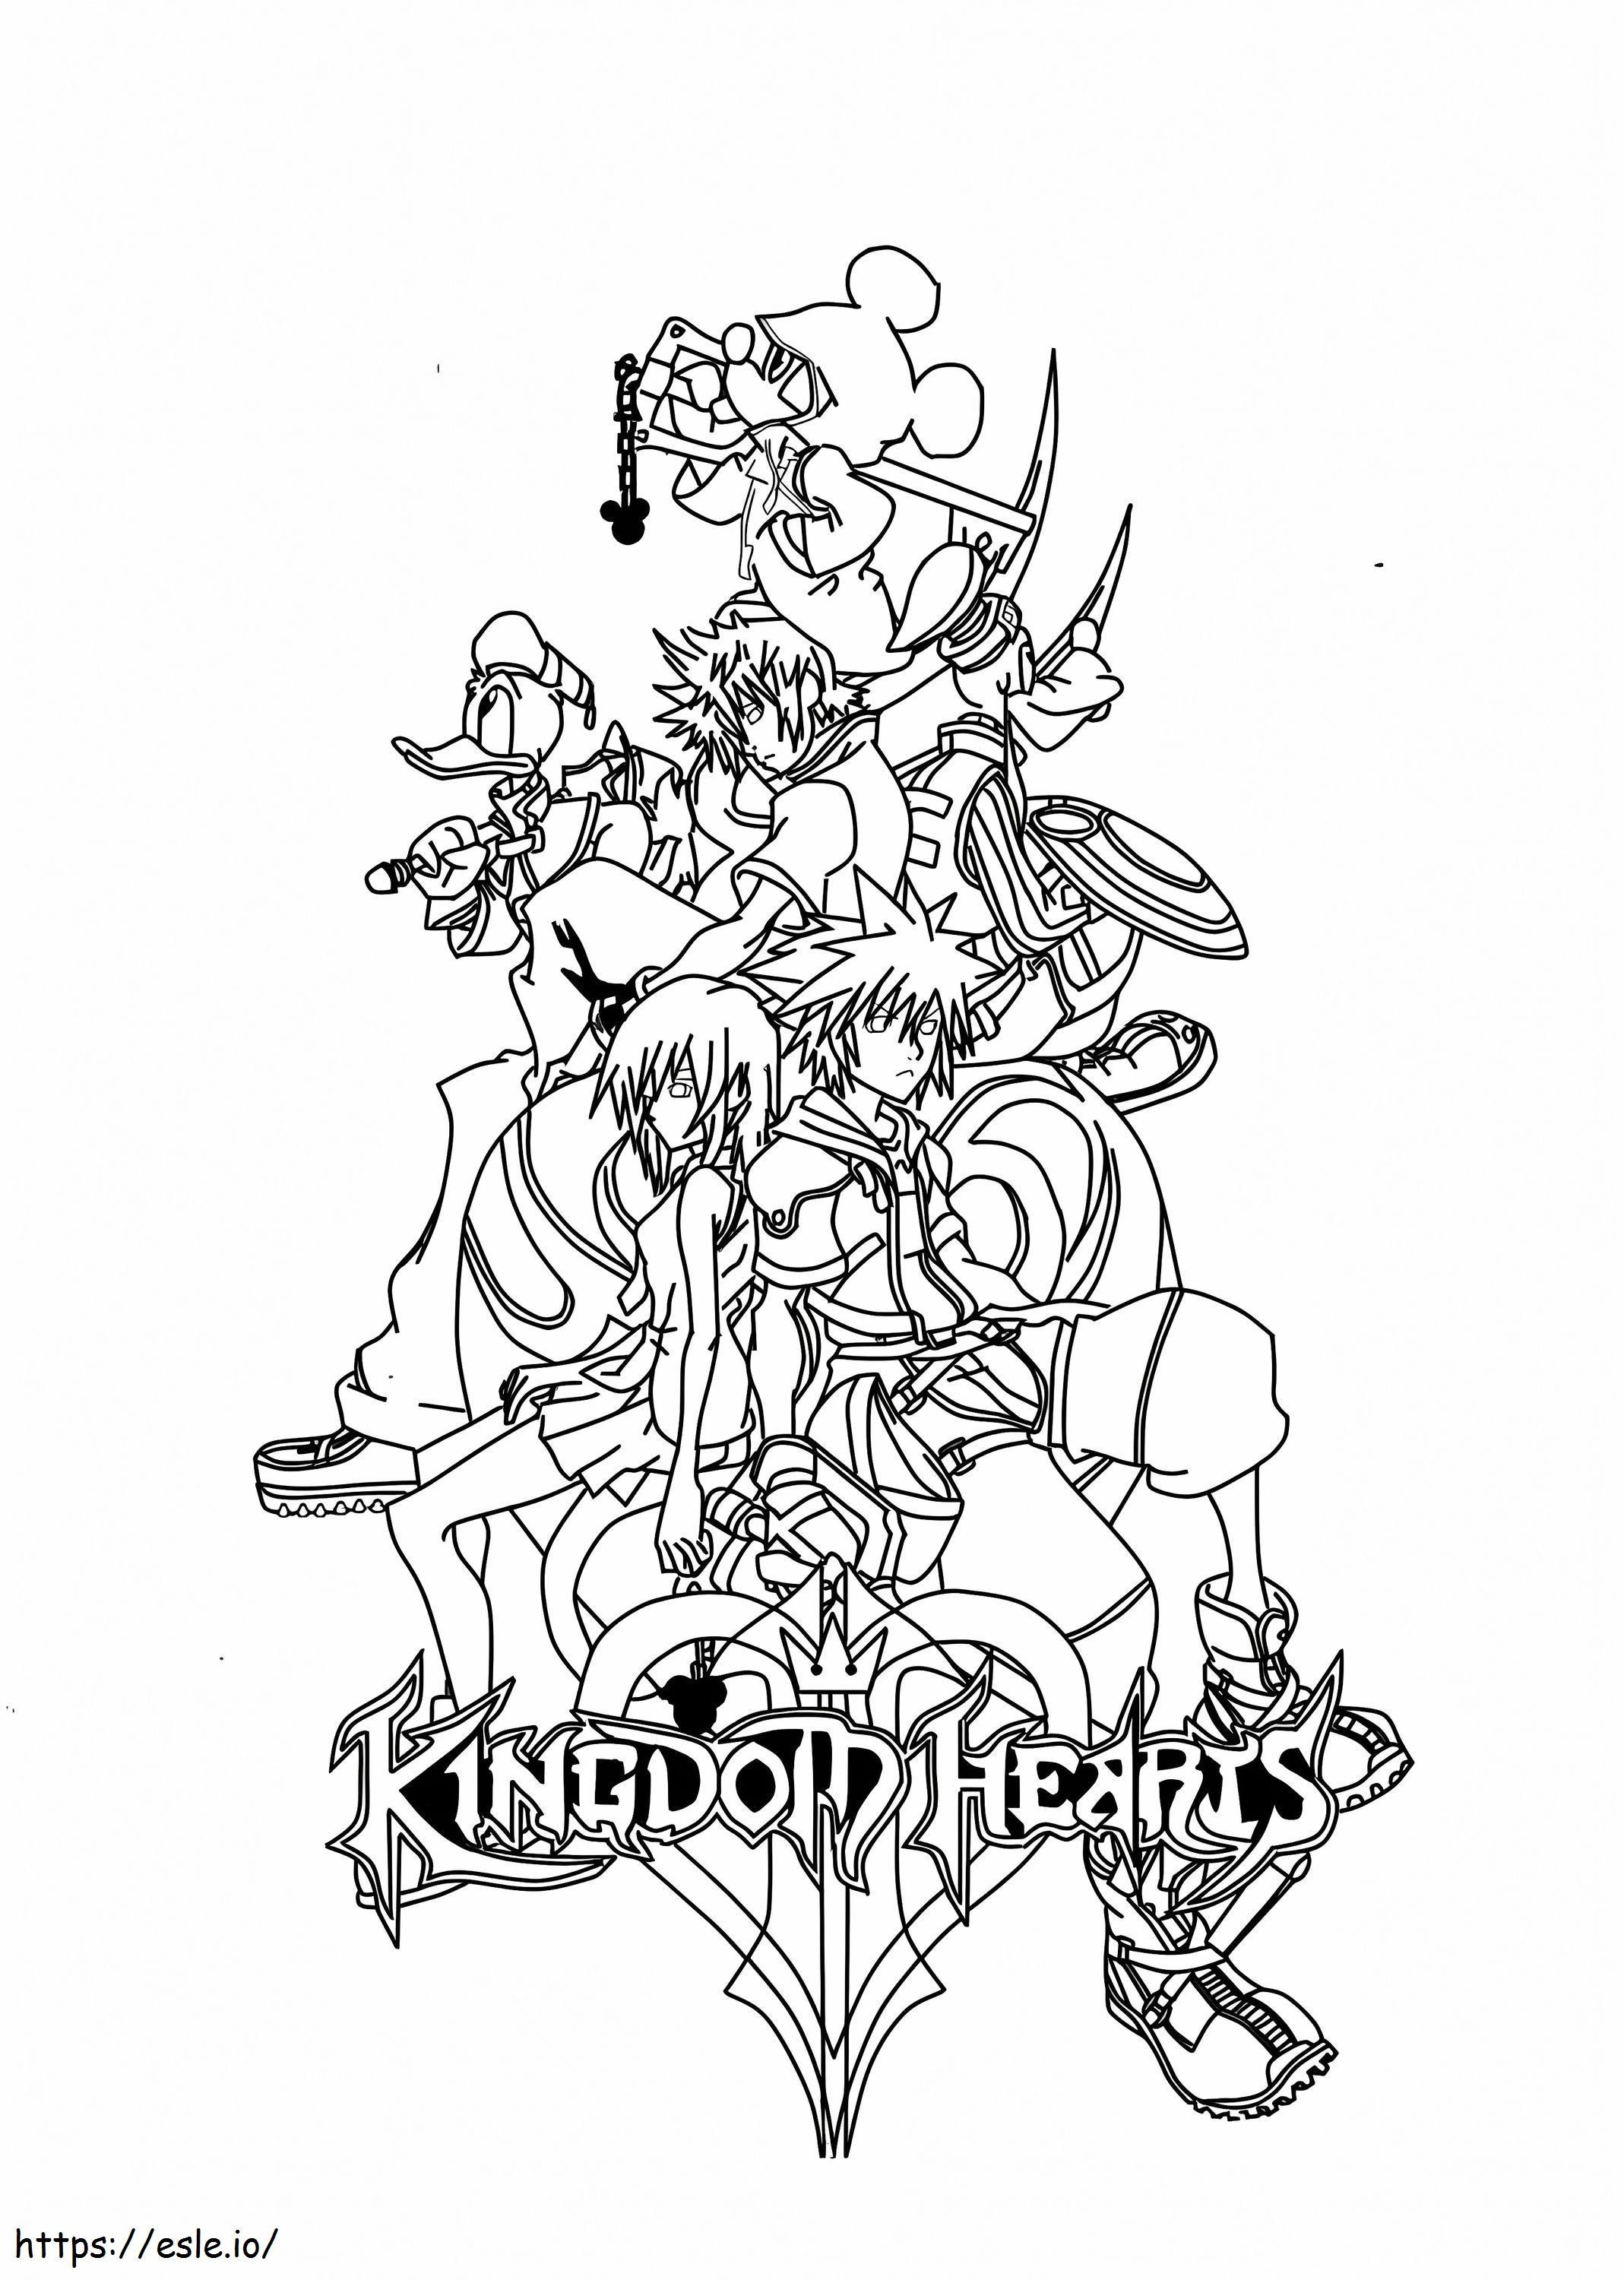 Postacie z Kingdom Hearts kolorowanka